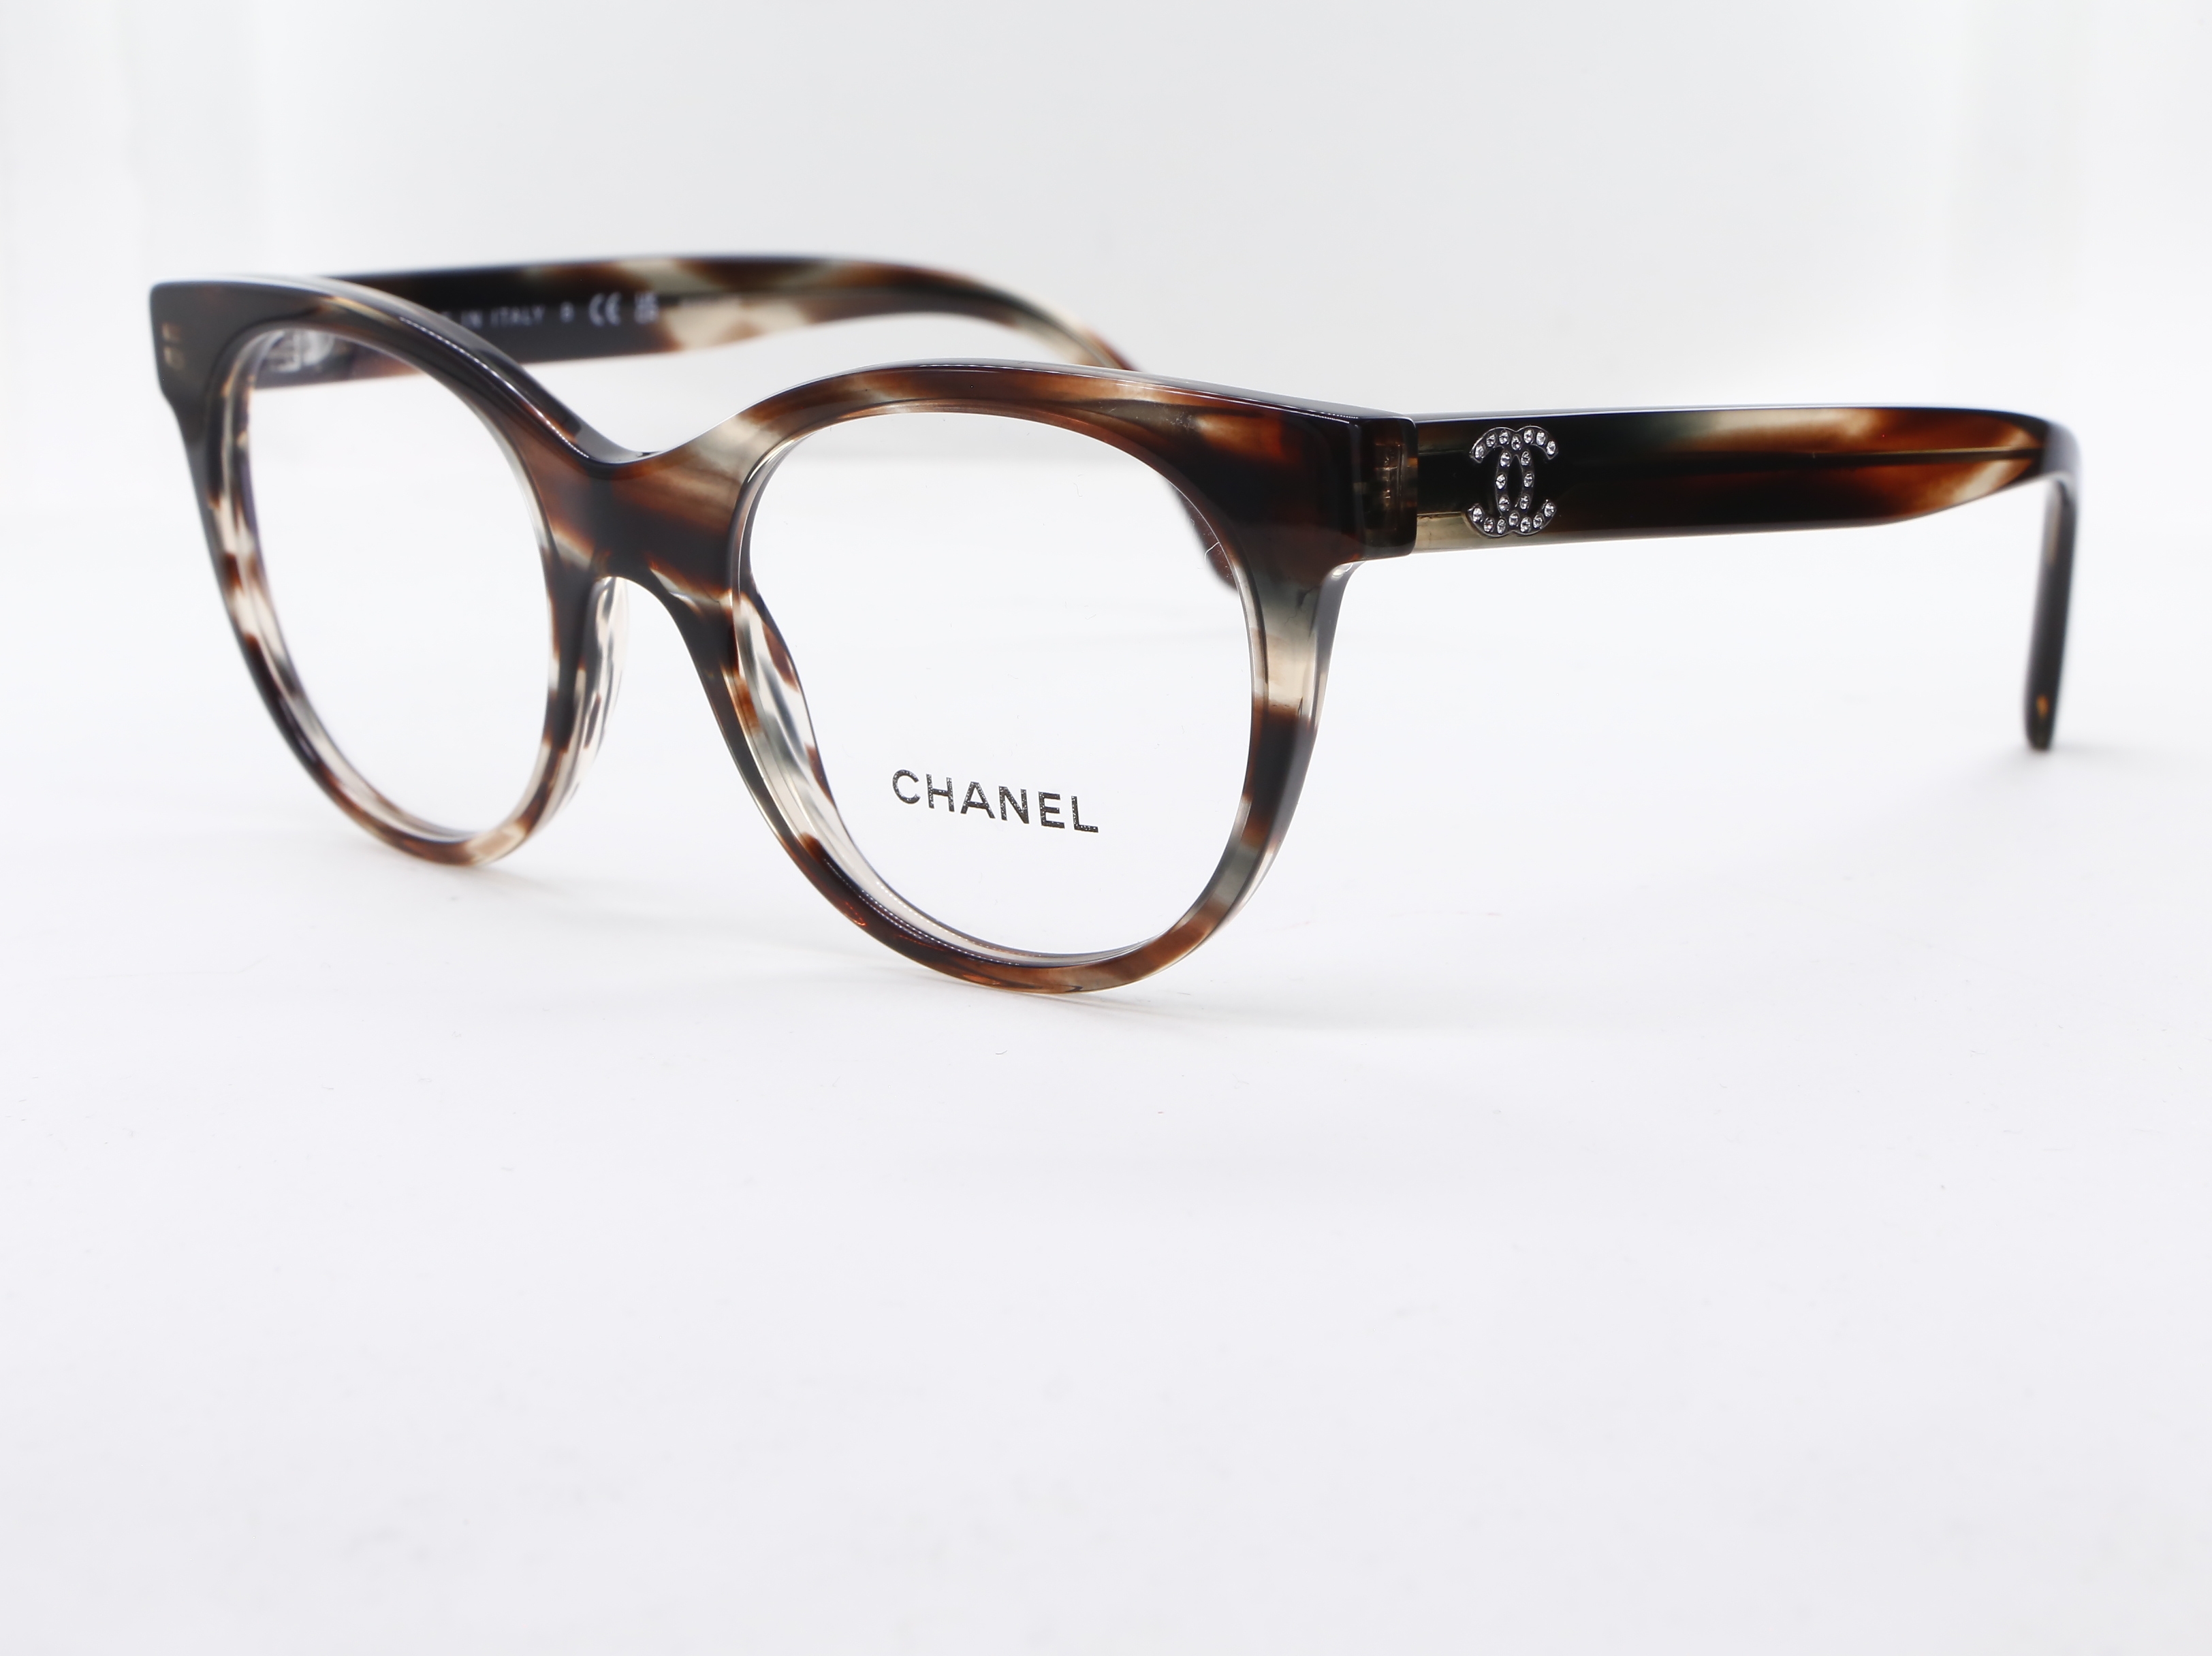 Chanel - ref: 89413